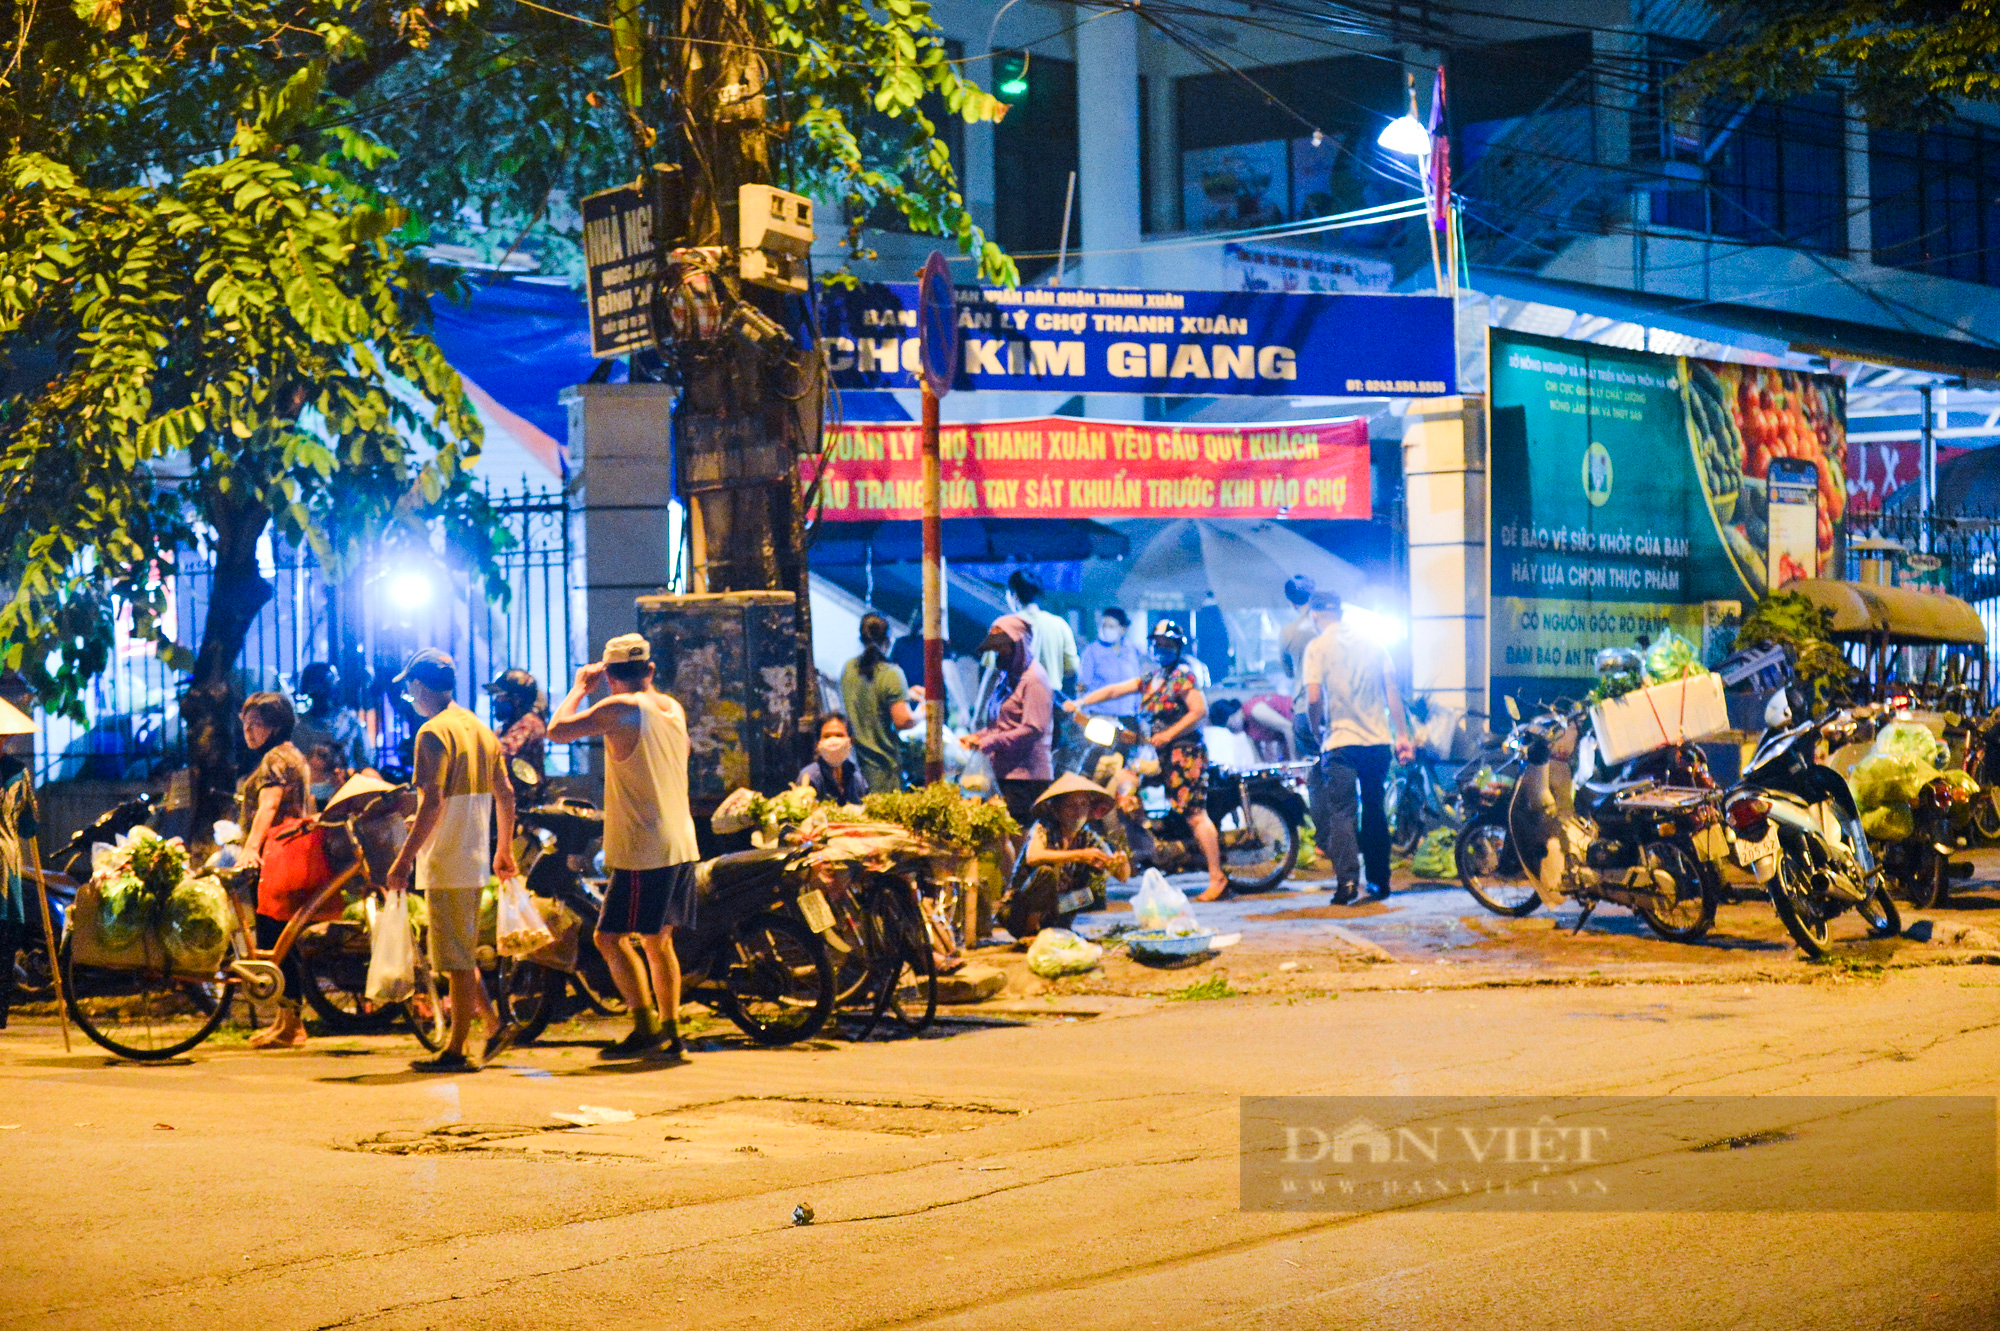 Chợ dân sinh ở Hà Nội đông đúc ngày đầu nới lỏng giãn cách - Ảnh 2.